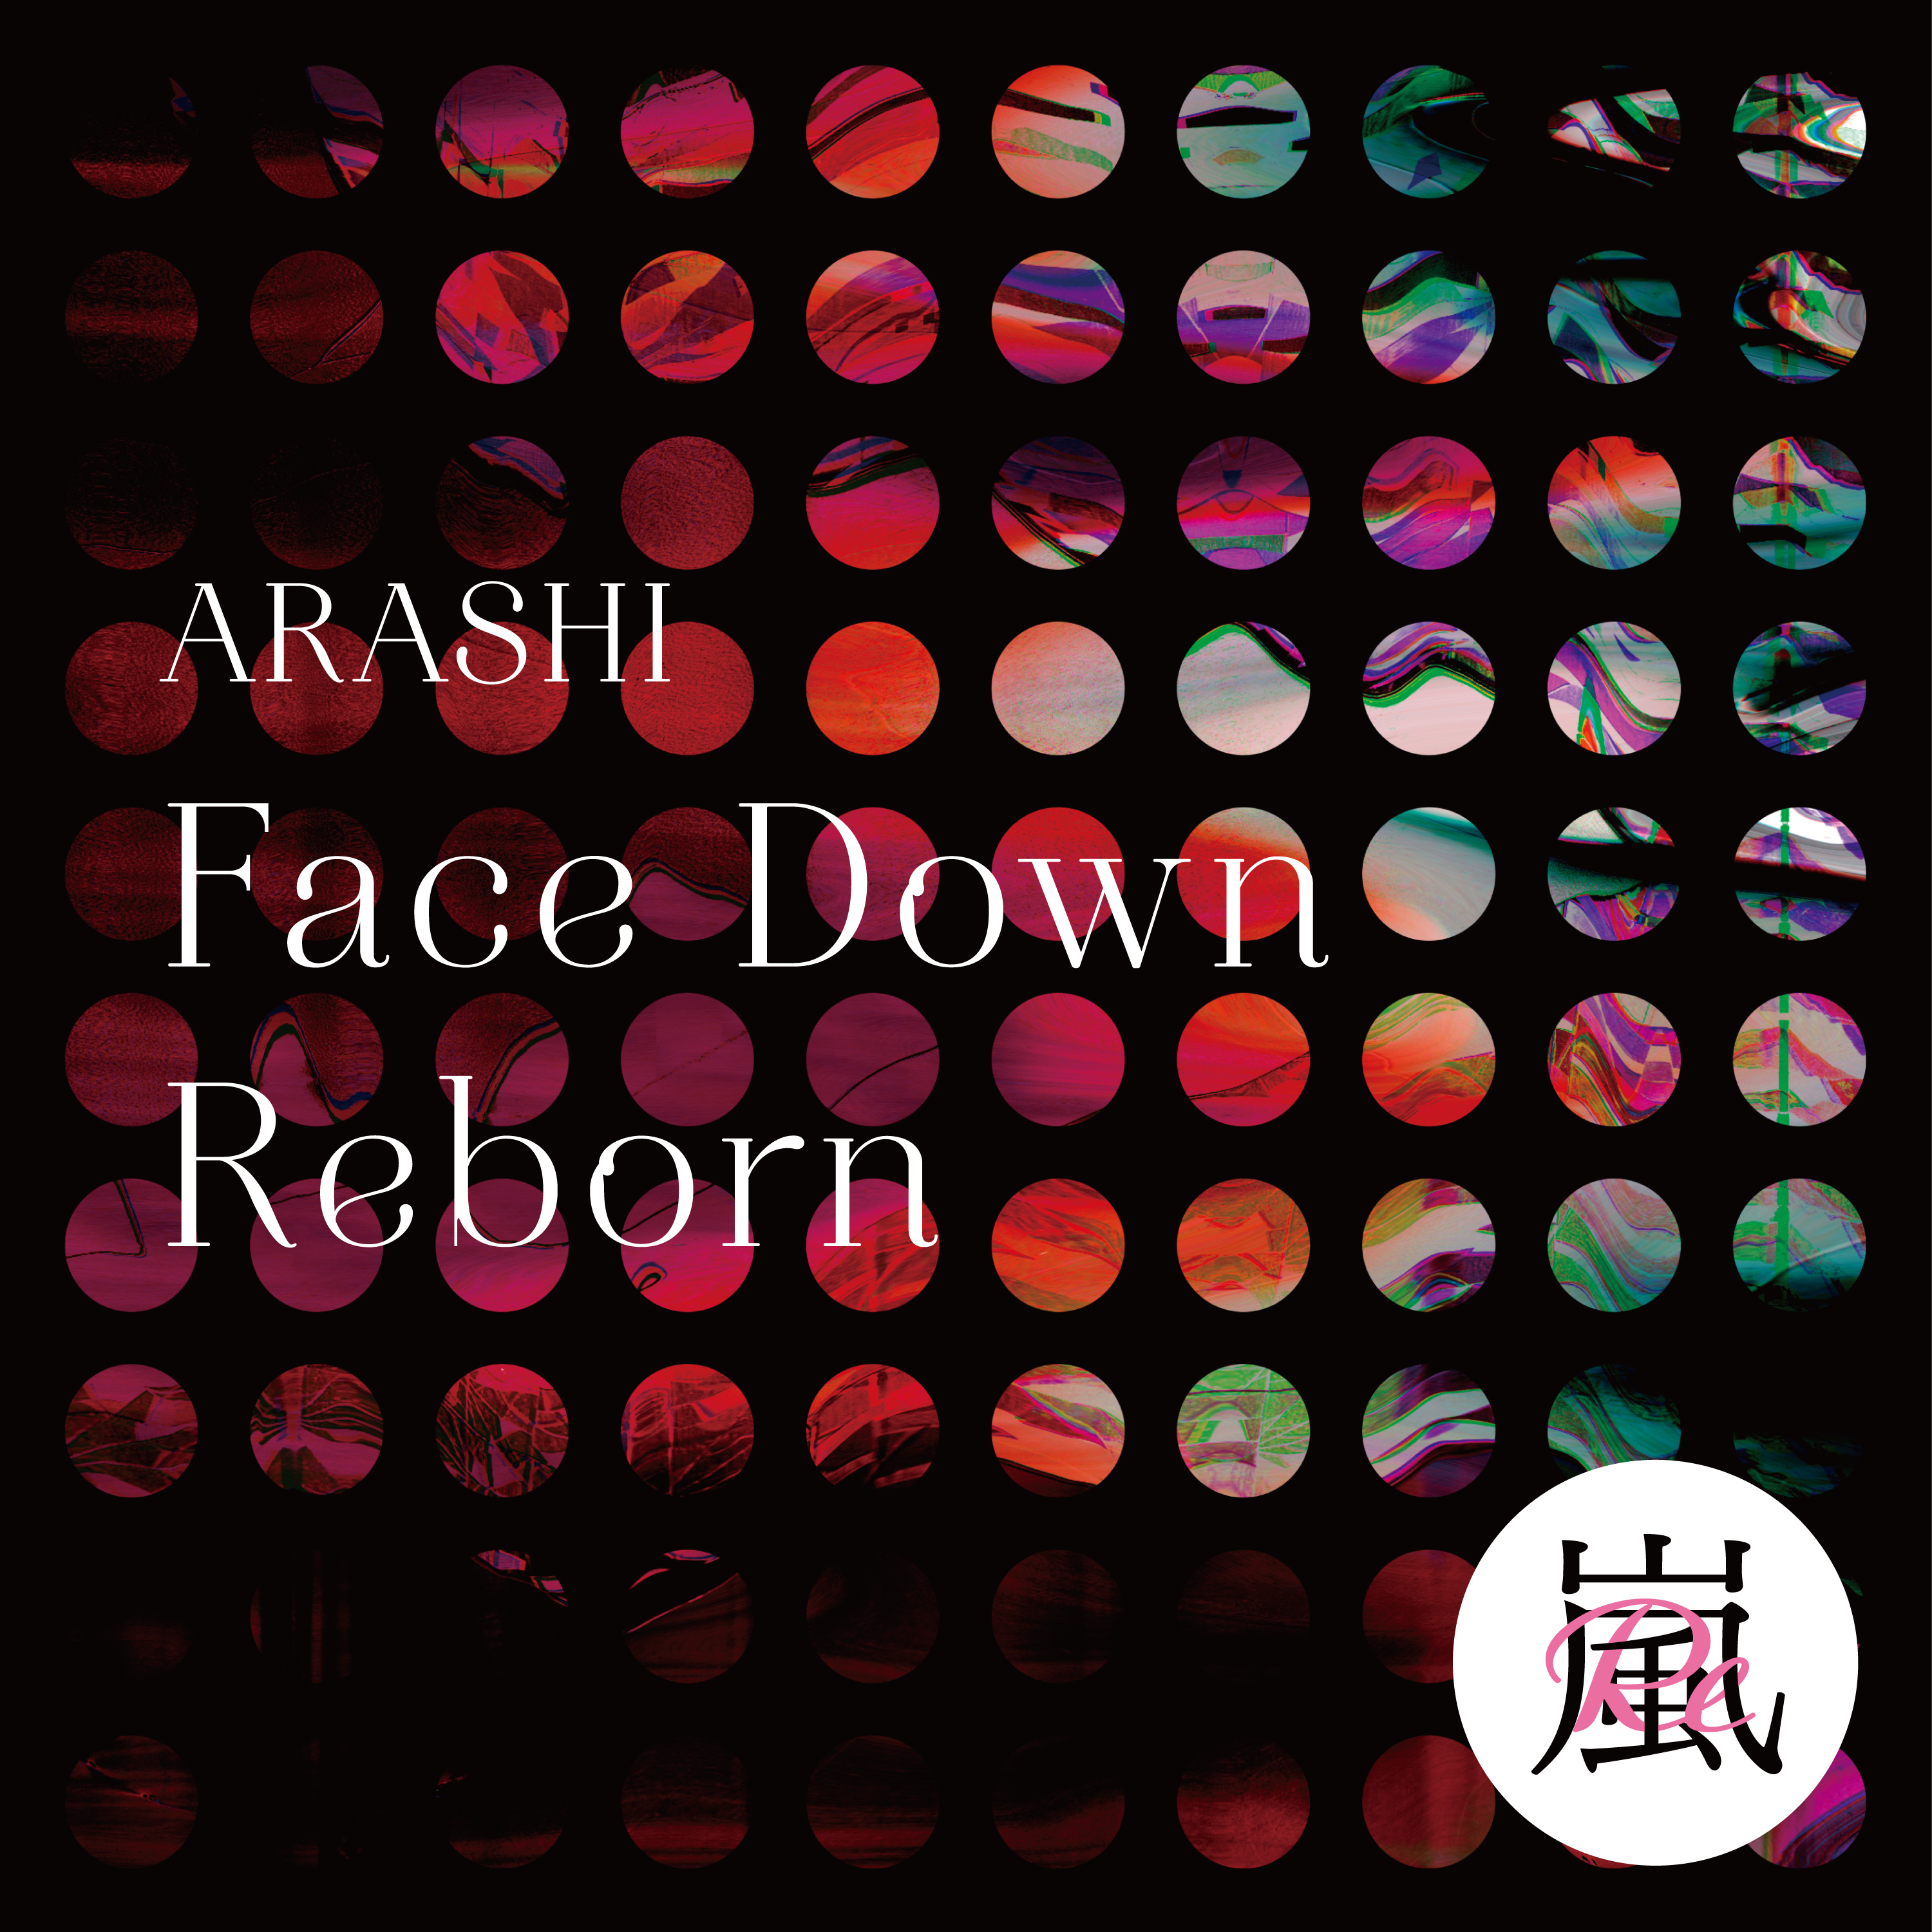 嵐 (あらし) 配信限定シングル『Face Down : RebornデジタルEP』(2020年6月26日発売) 高画質ジャケ写